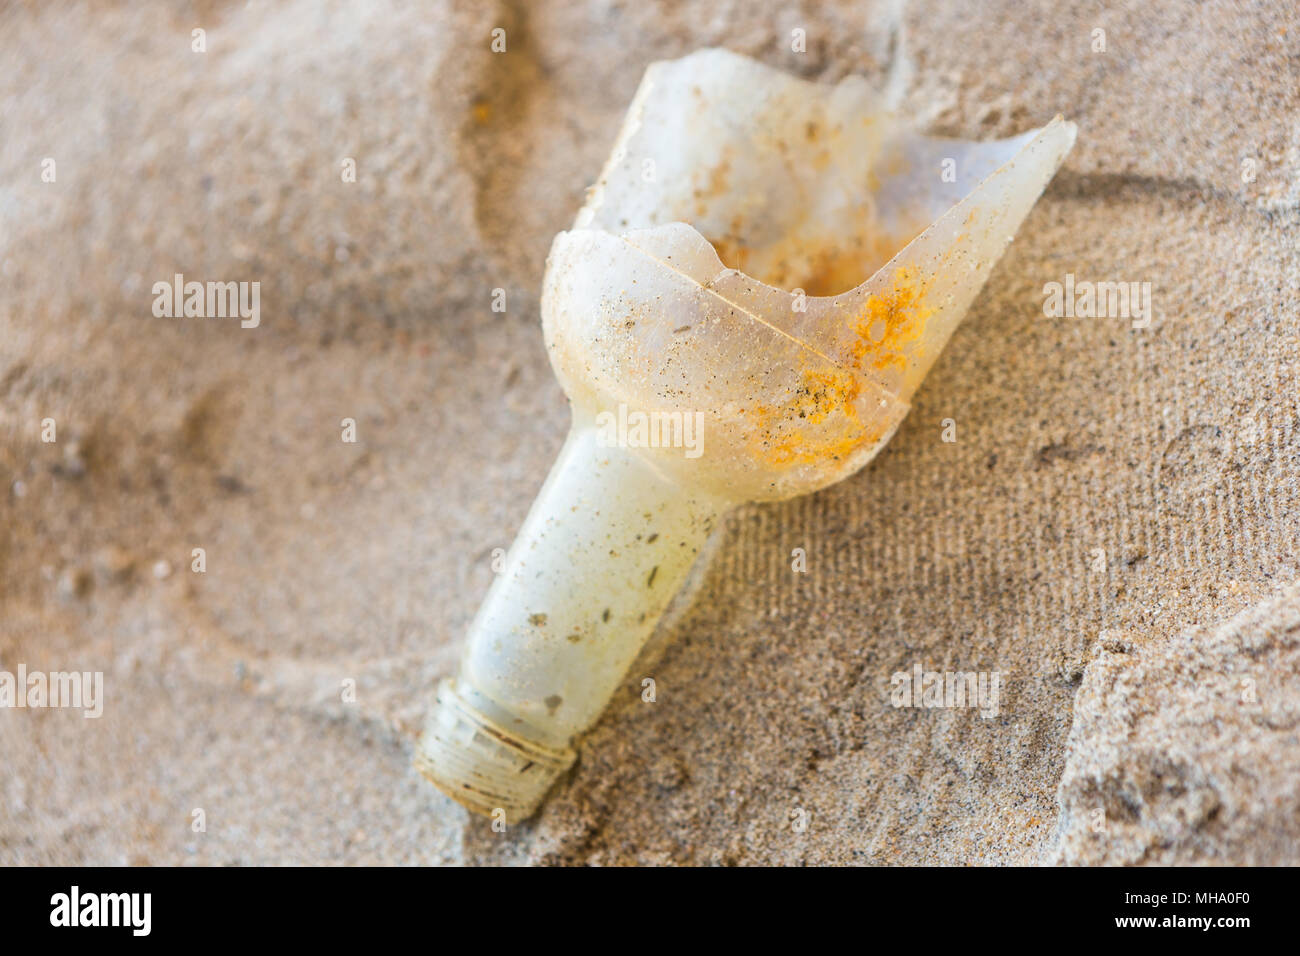 Pulizia spiagge. Pulizia spiagge sporca dall'azione dell'uomo. La sostenibilità del pianeta e la conservazione della natura. Foto Stock